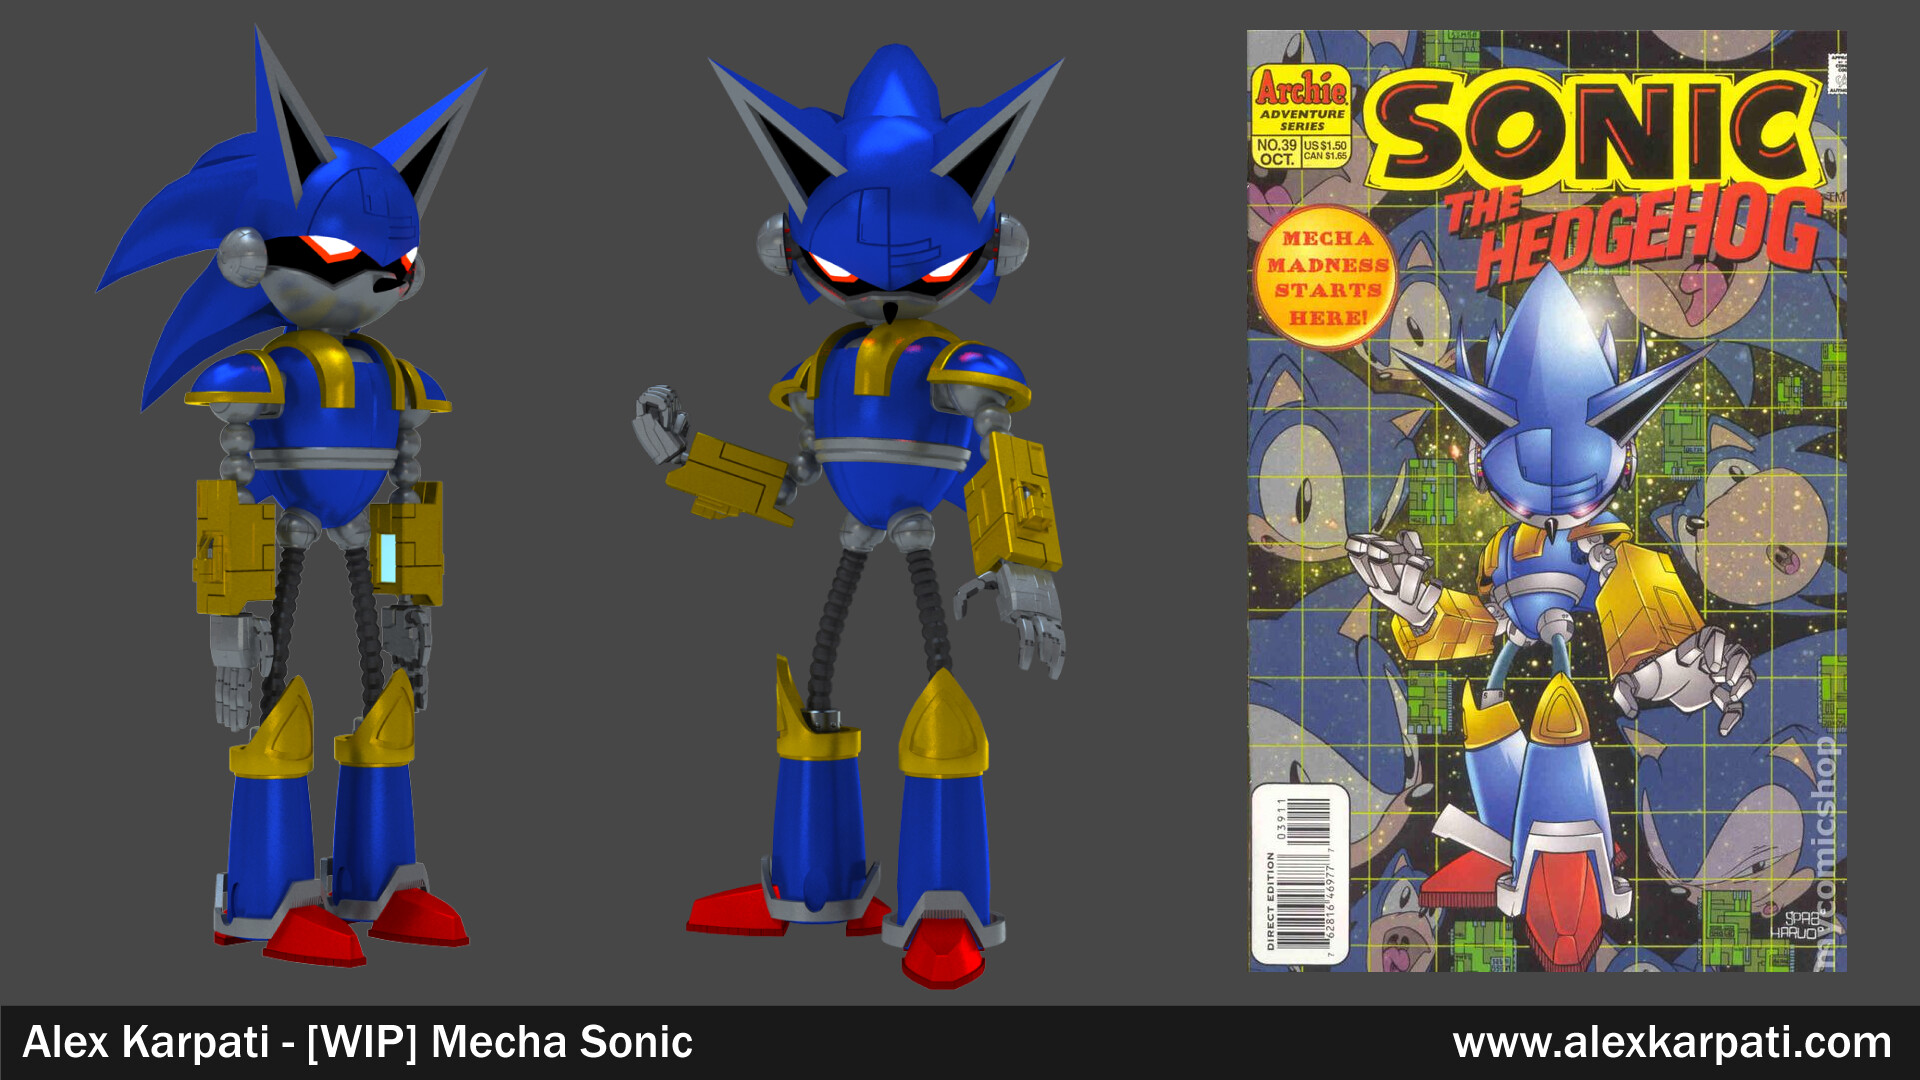 ArtStation - Mecha Sonic